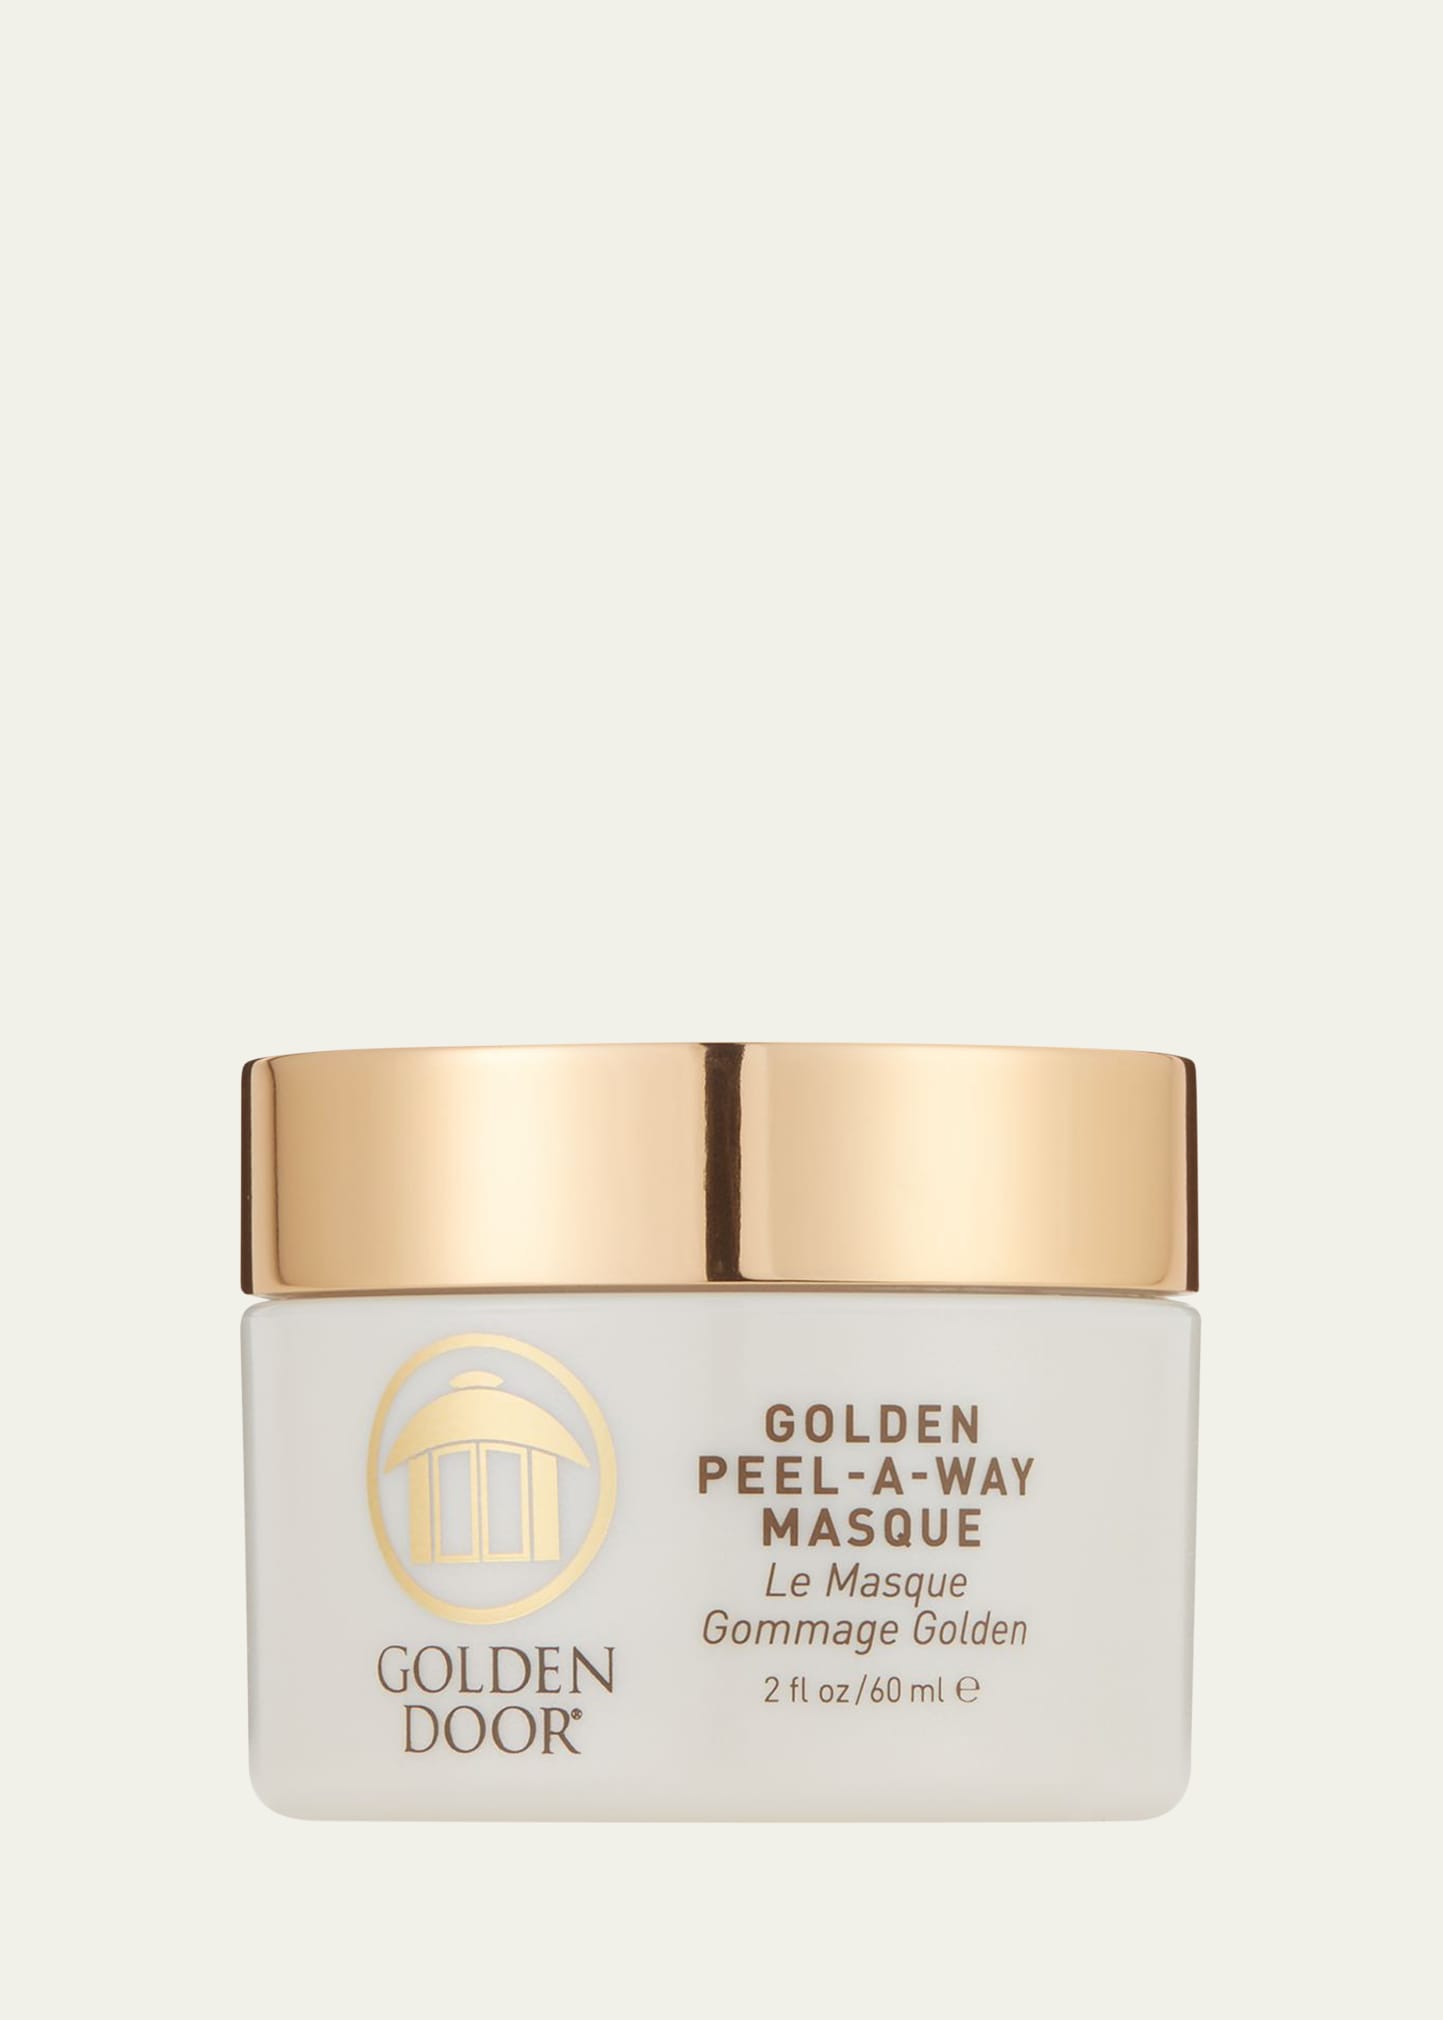 Golden Peel-A-Way Masque, 2 oz./ 60 mL